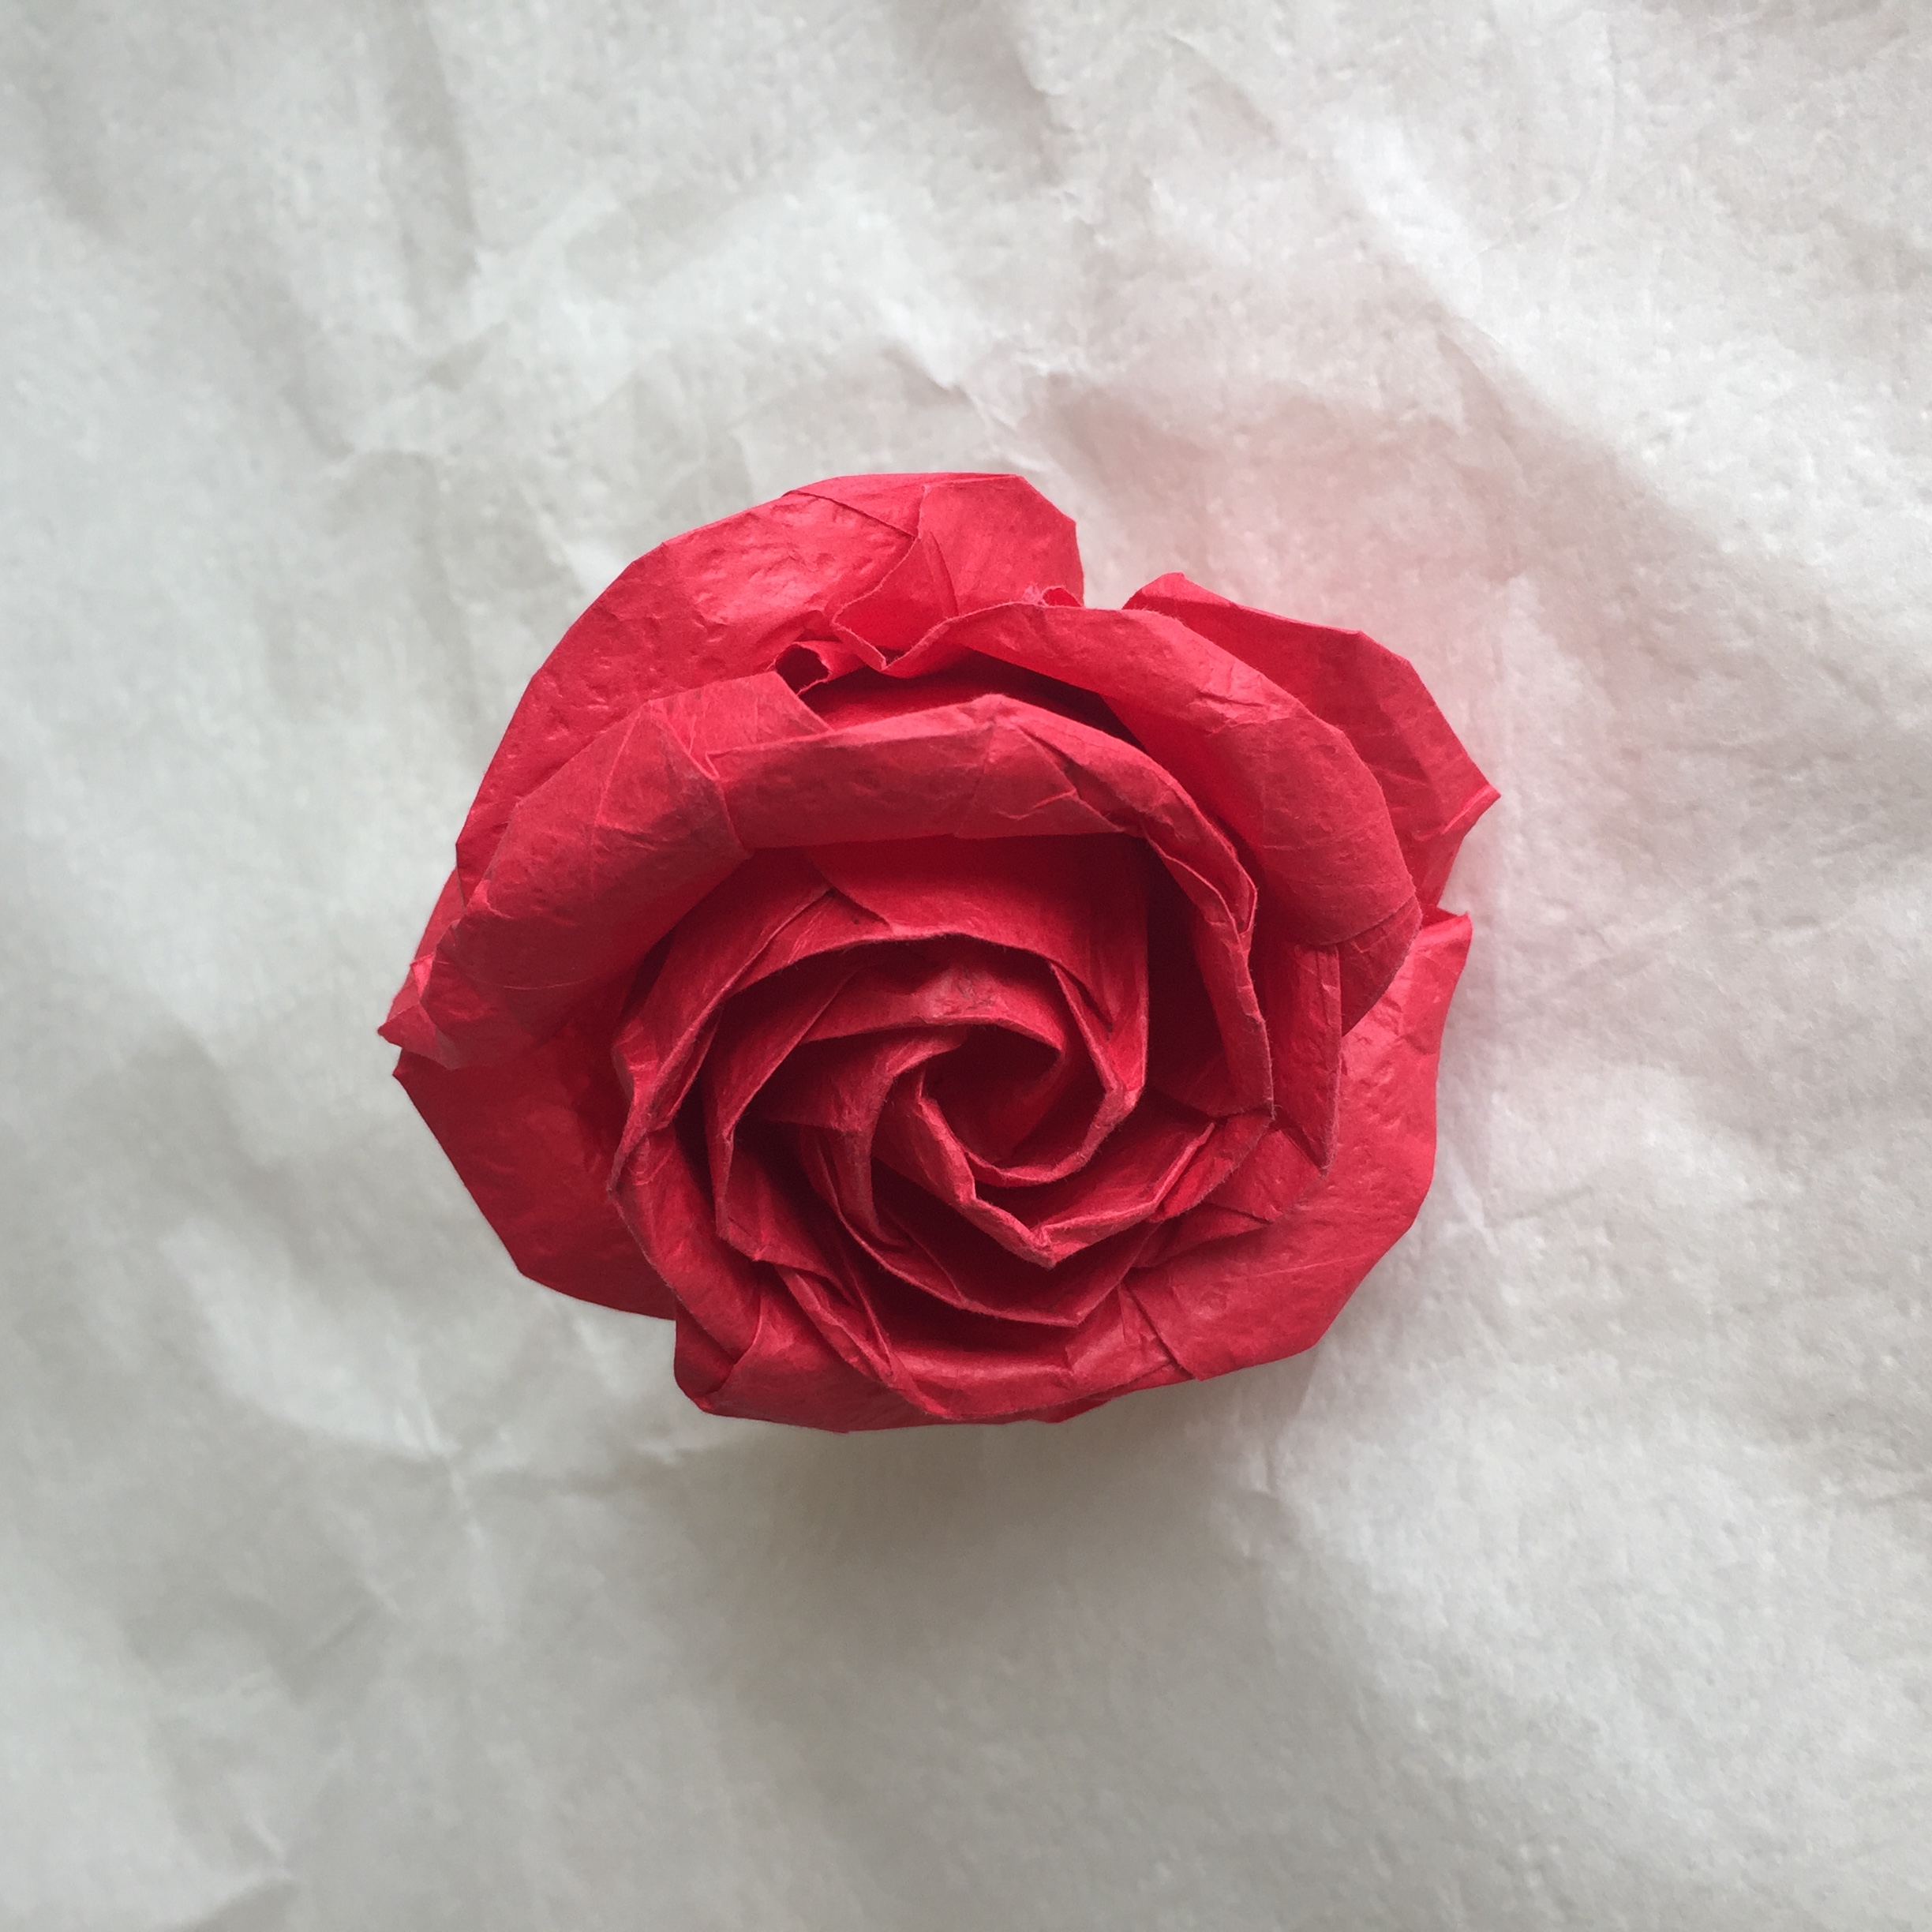 酒杯玫瑰折纸 太美了 震撼到我了